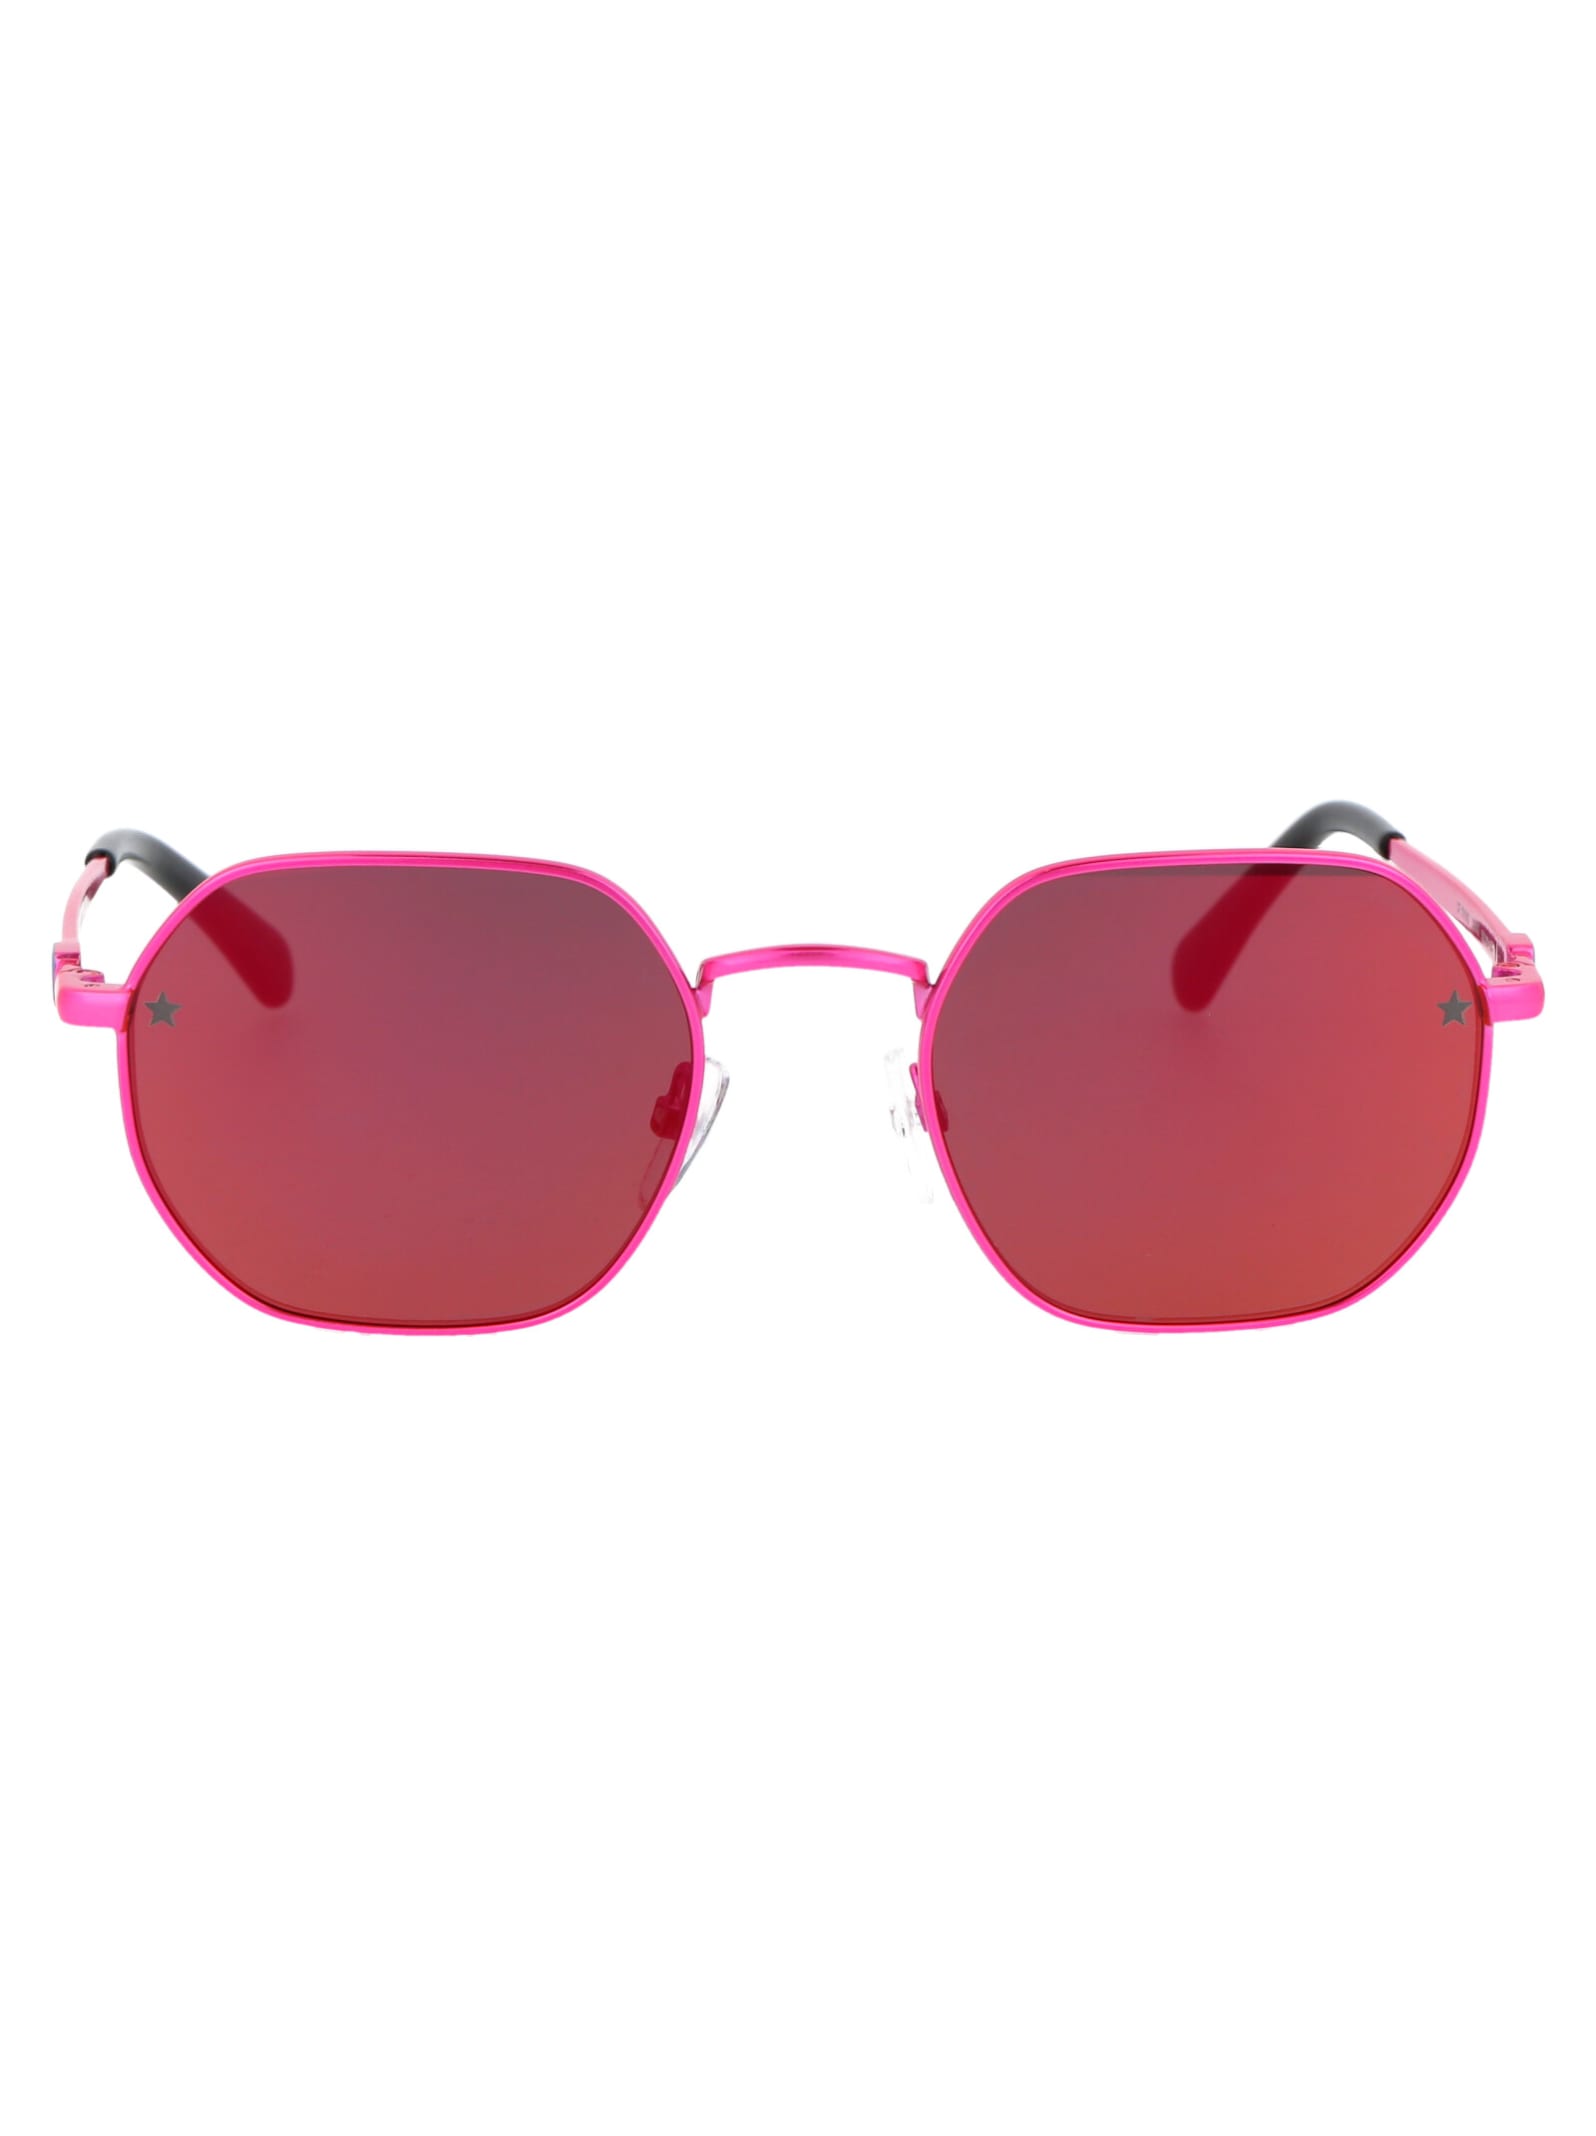 Cf 1019/s Sunglasses